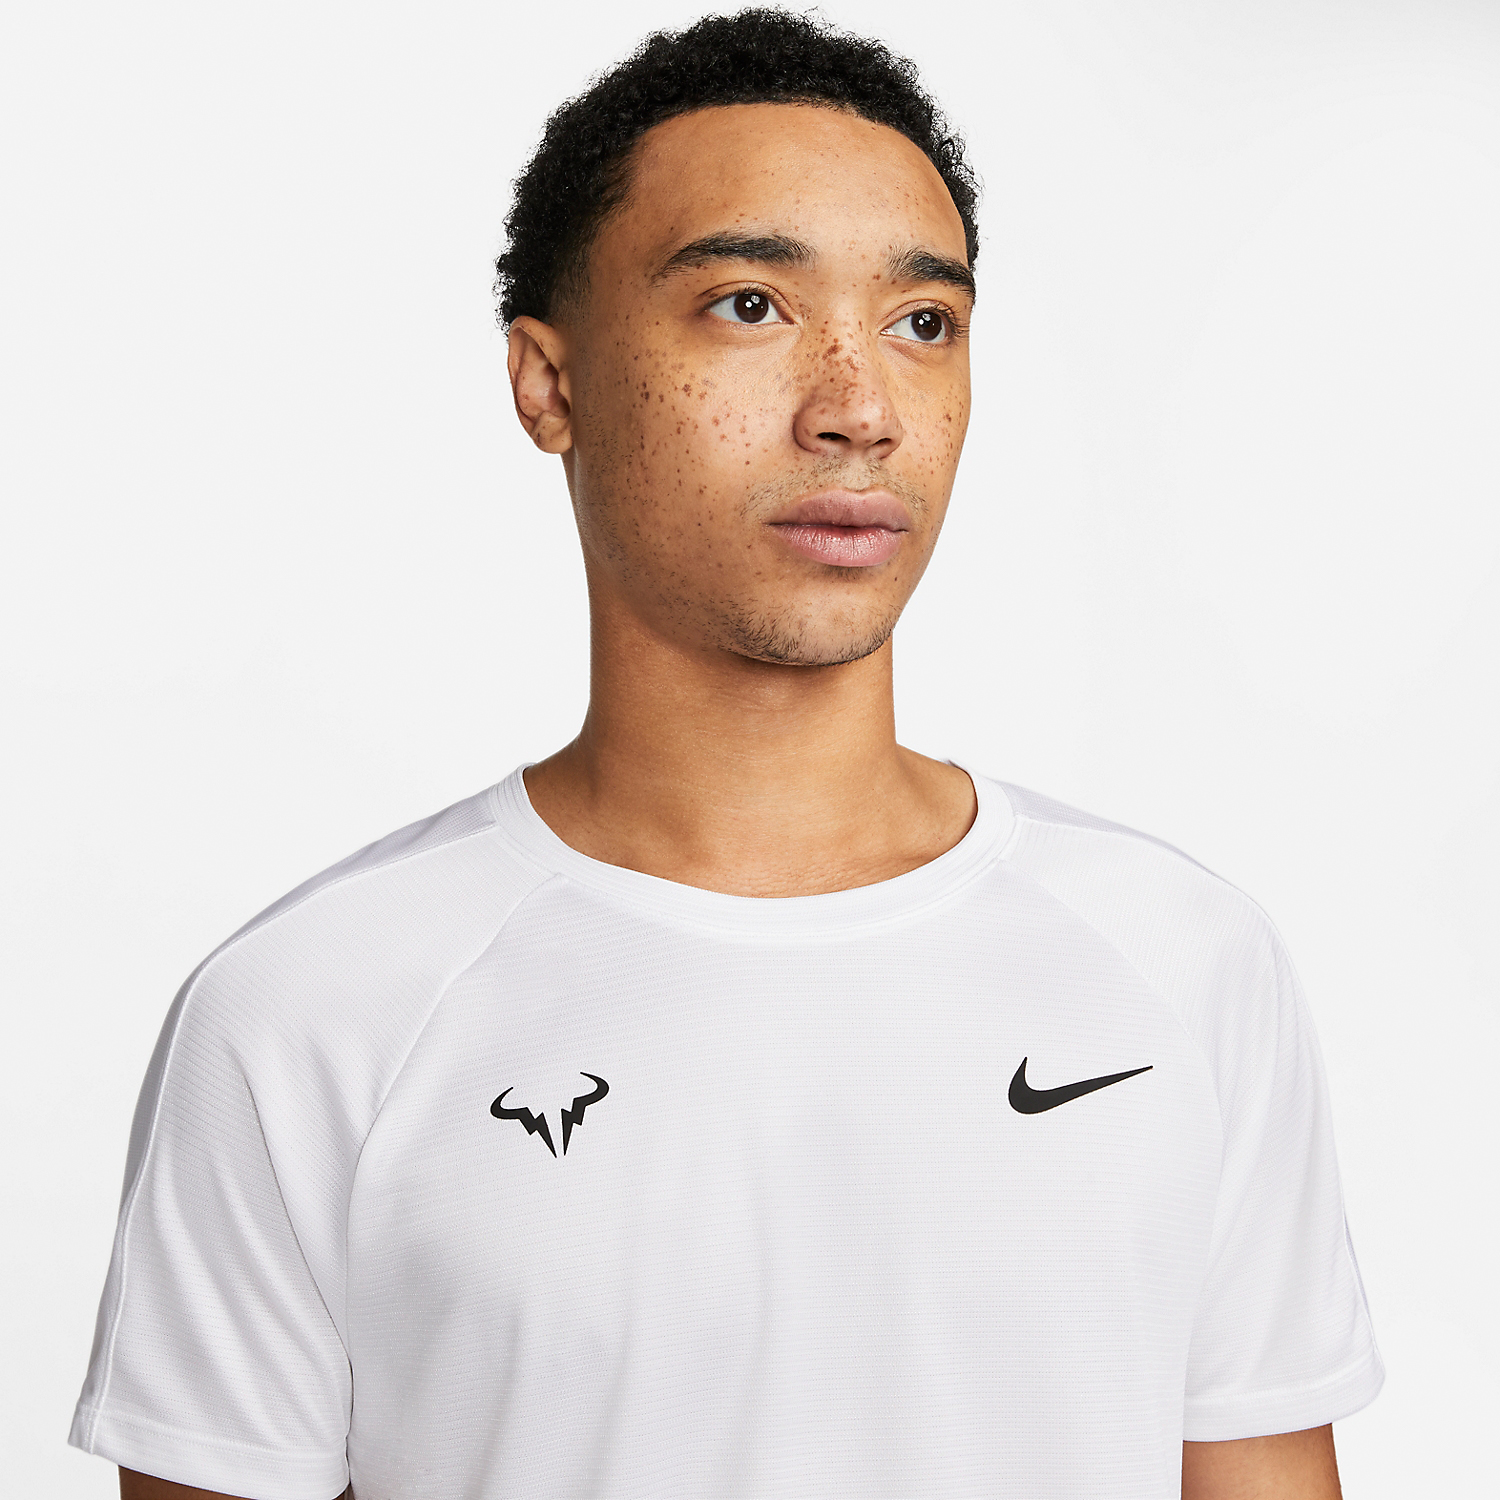 Nike Rafa Challenger Camiseta - White/Black